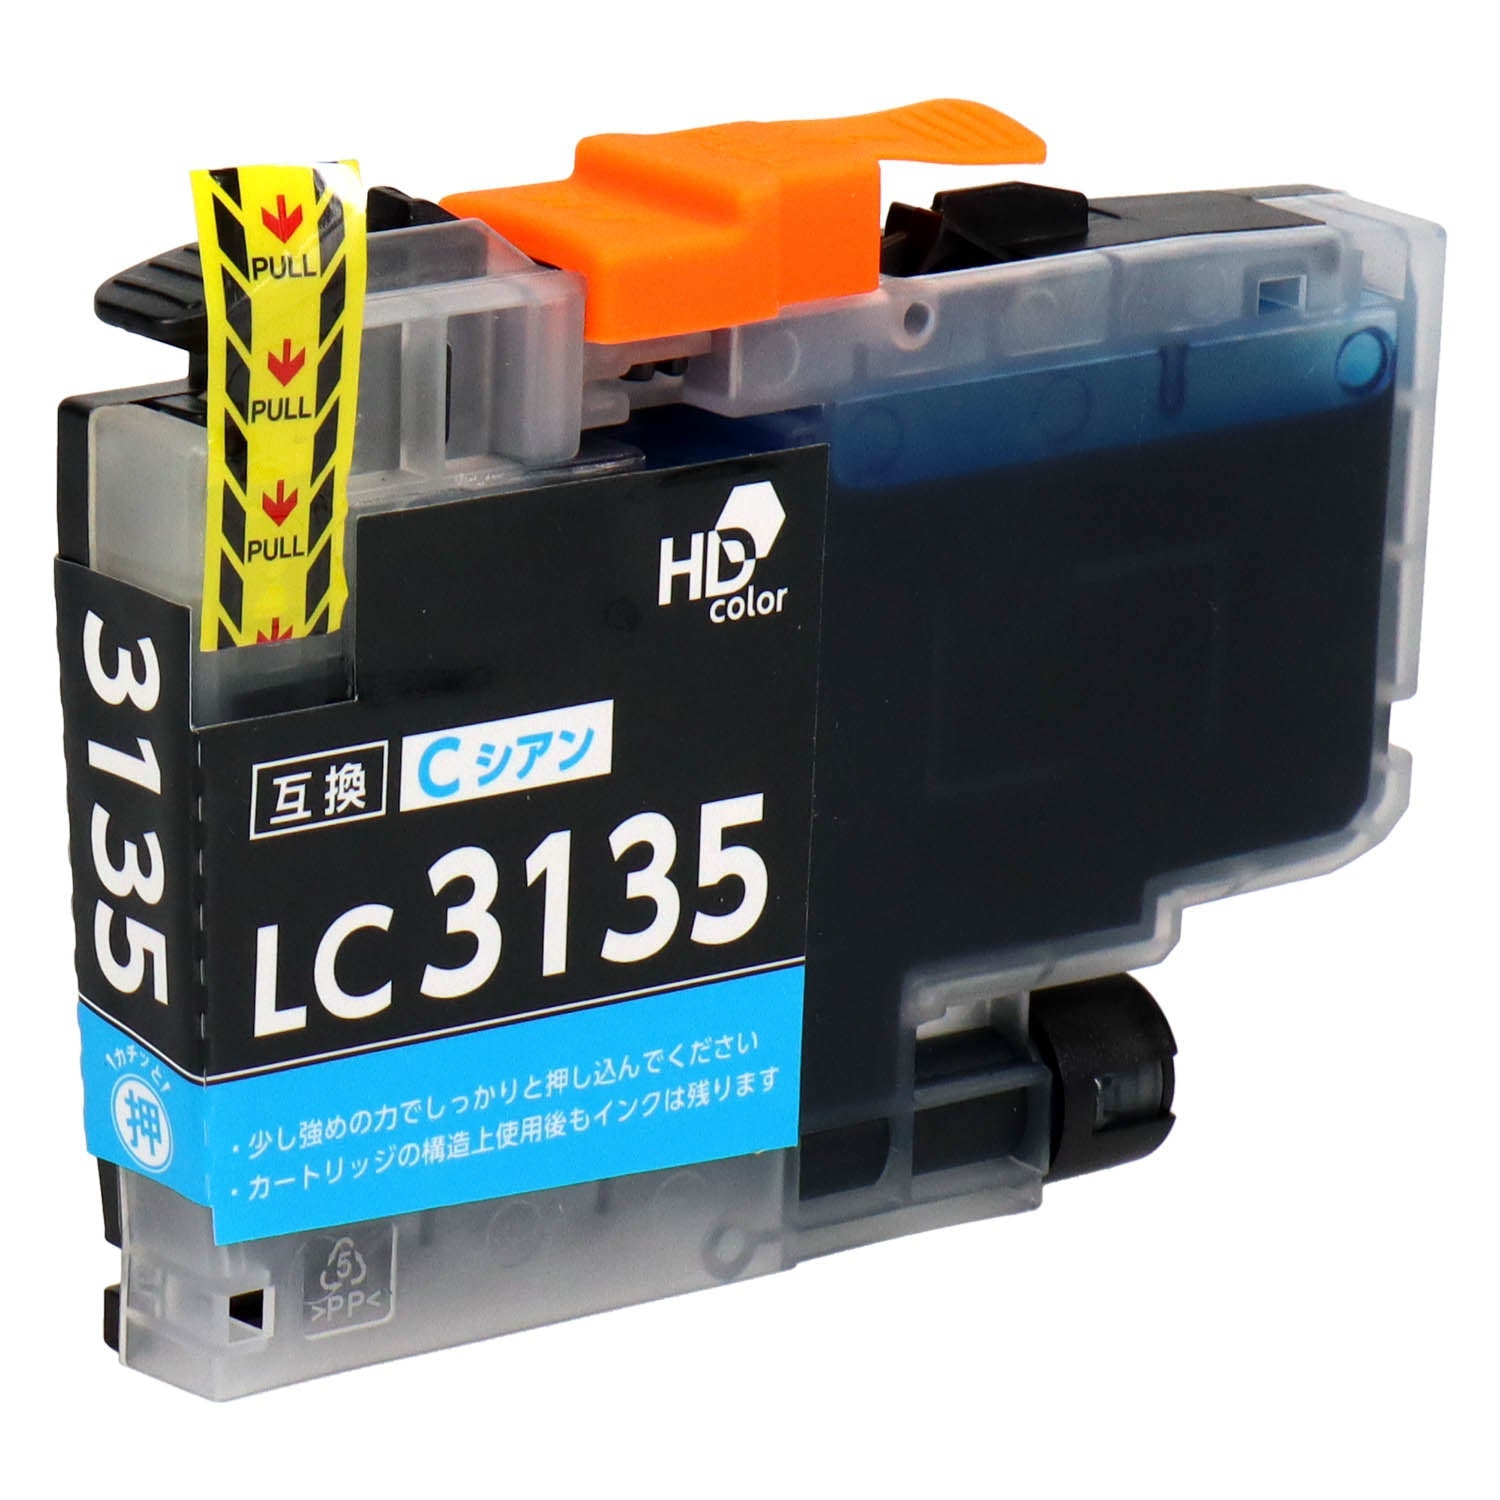 ブラザー用 LC3135-4PK 互換インク 4色セット 超大容量